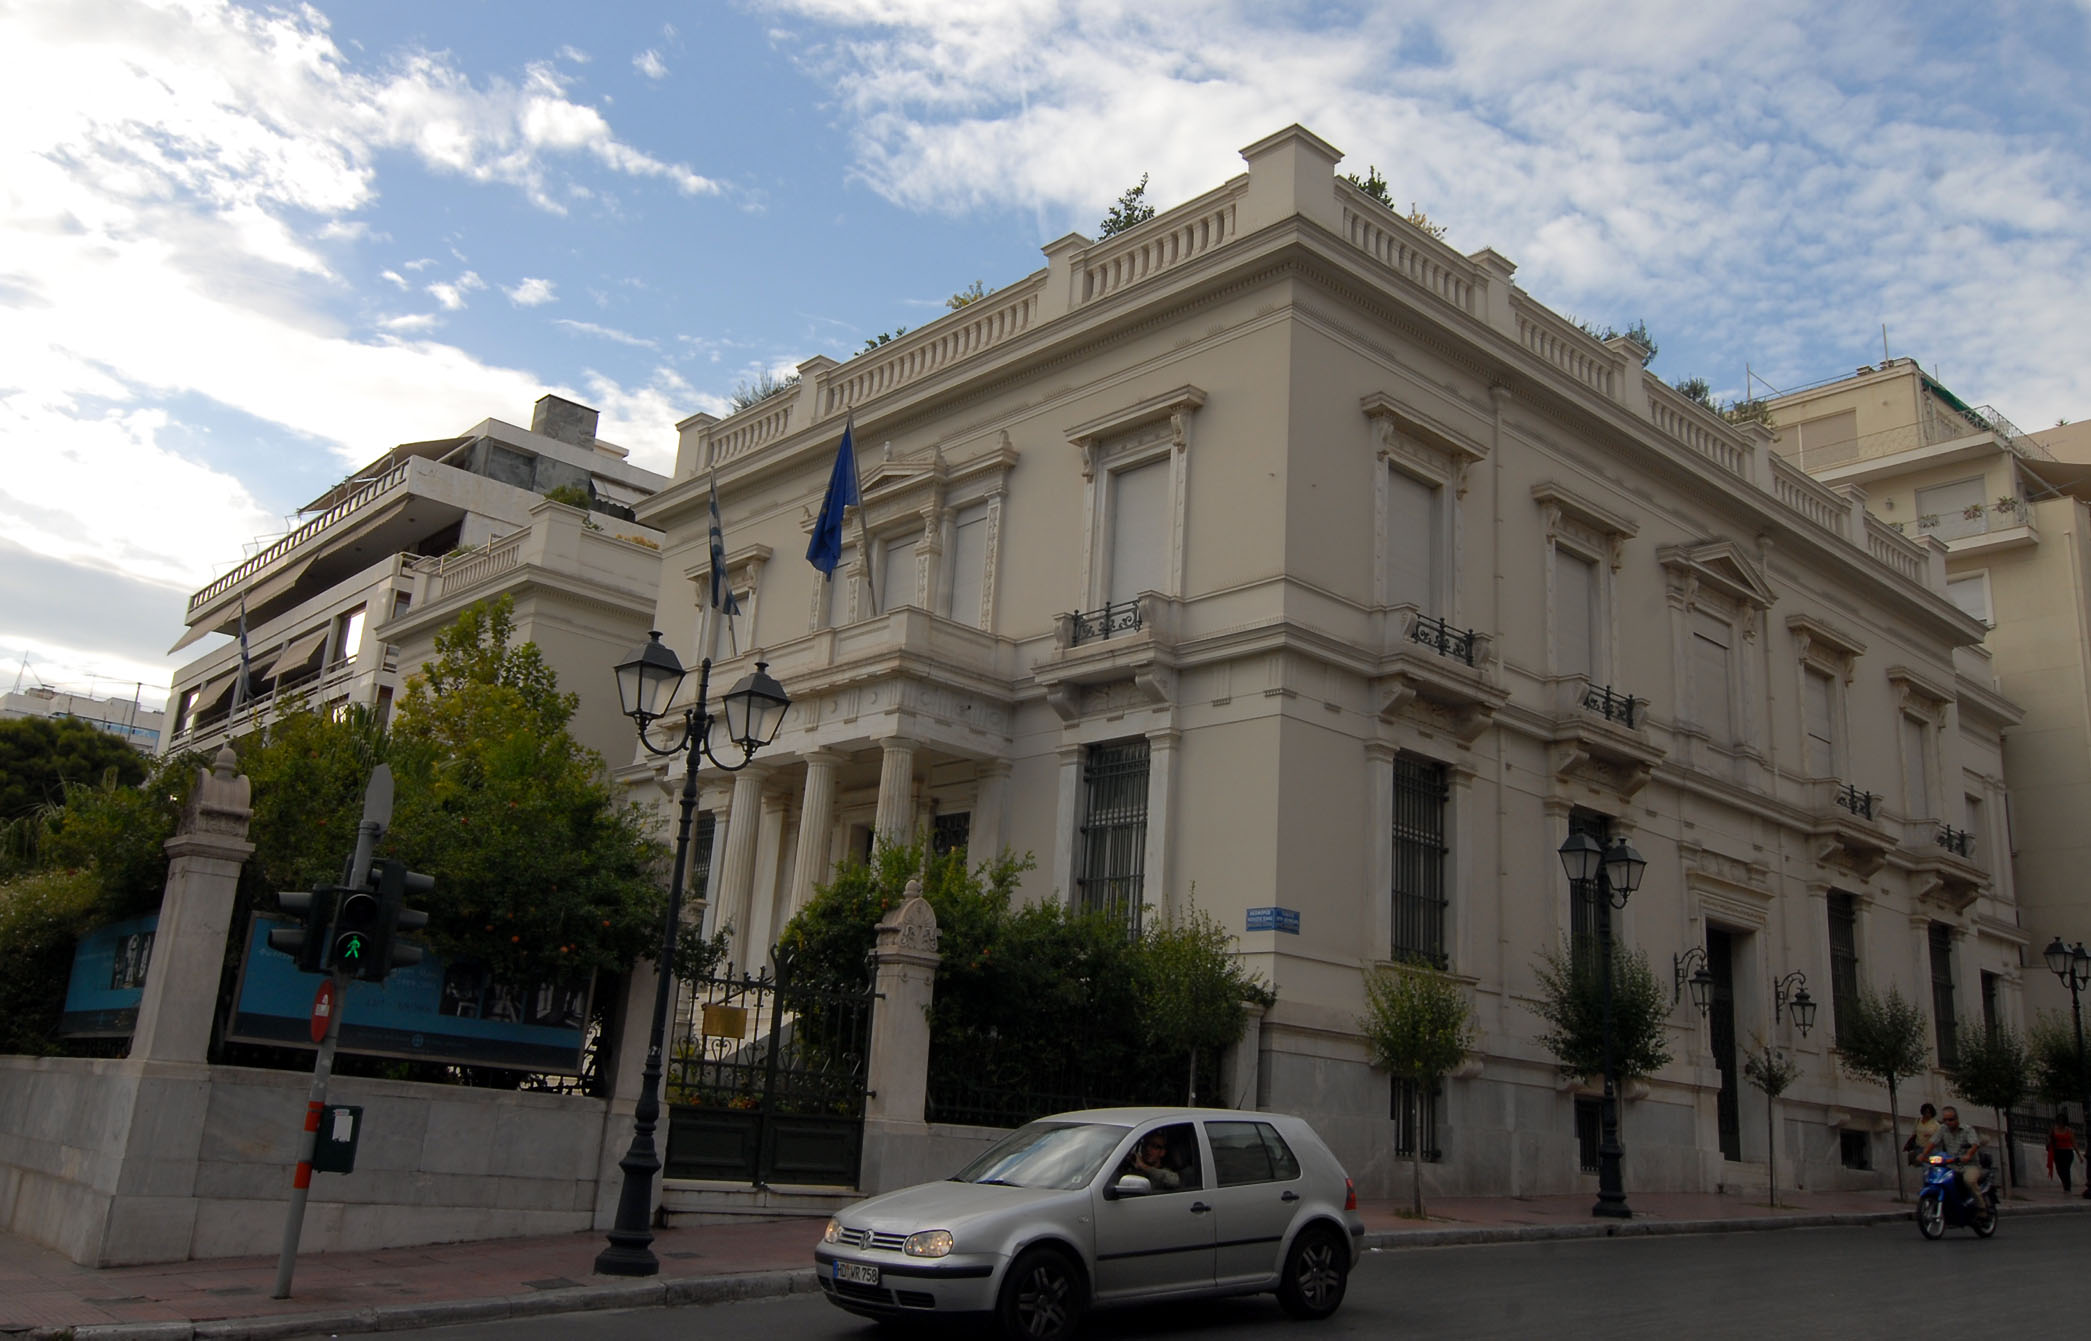 Μουσείο Μπενάκη: Ξεναγήσεις για το κοινό από επιμελητές των συλλογών